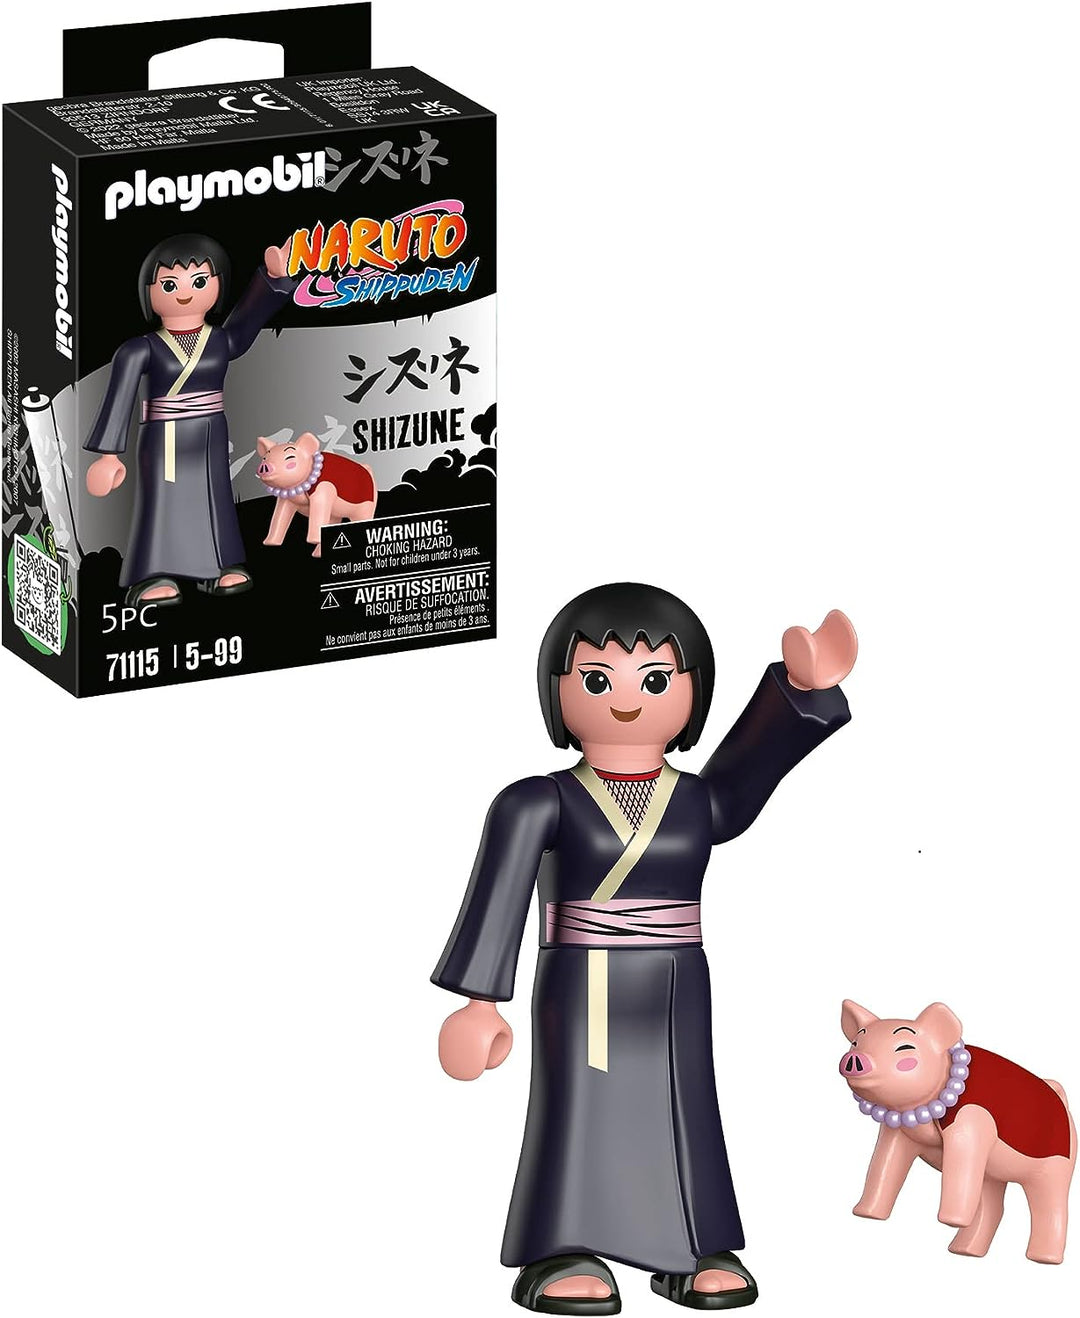 Playmobil 71115 Naruto: Shizune Figure Set, Naruto Shippuden Anime Collectors Figure